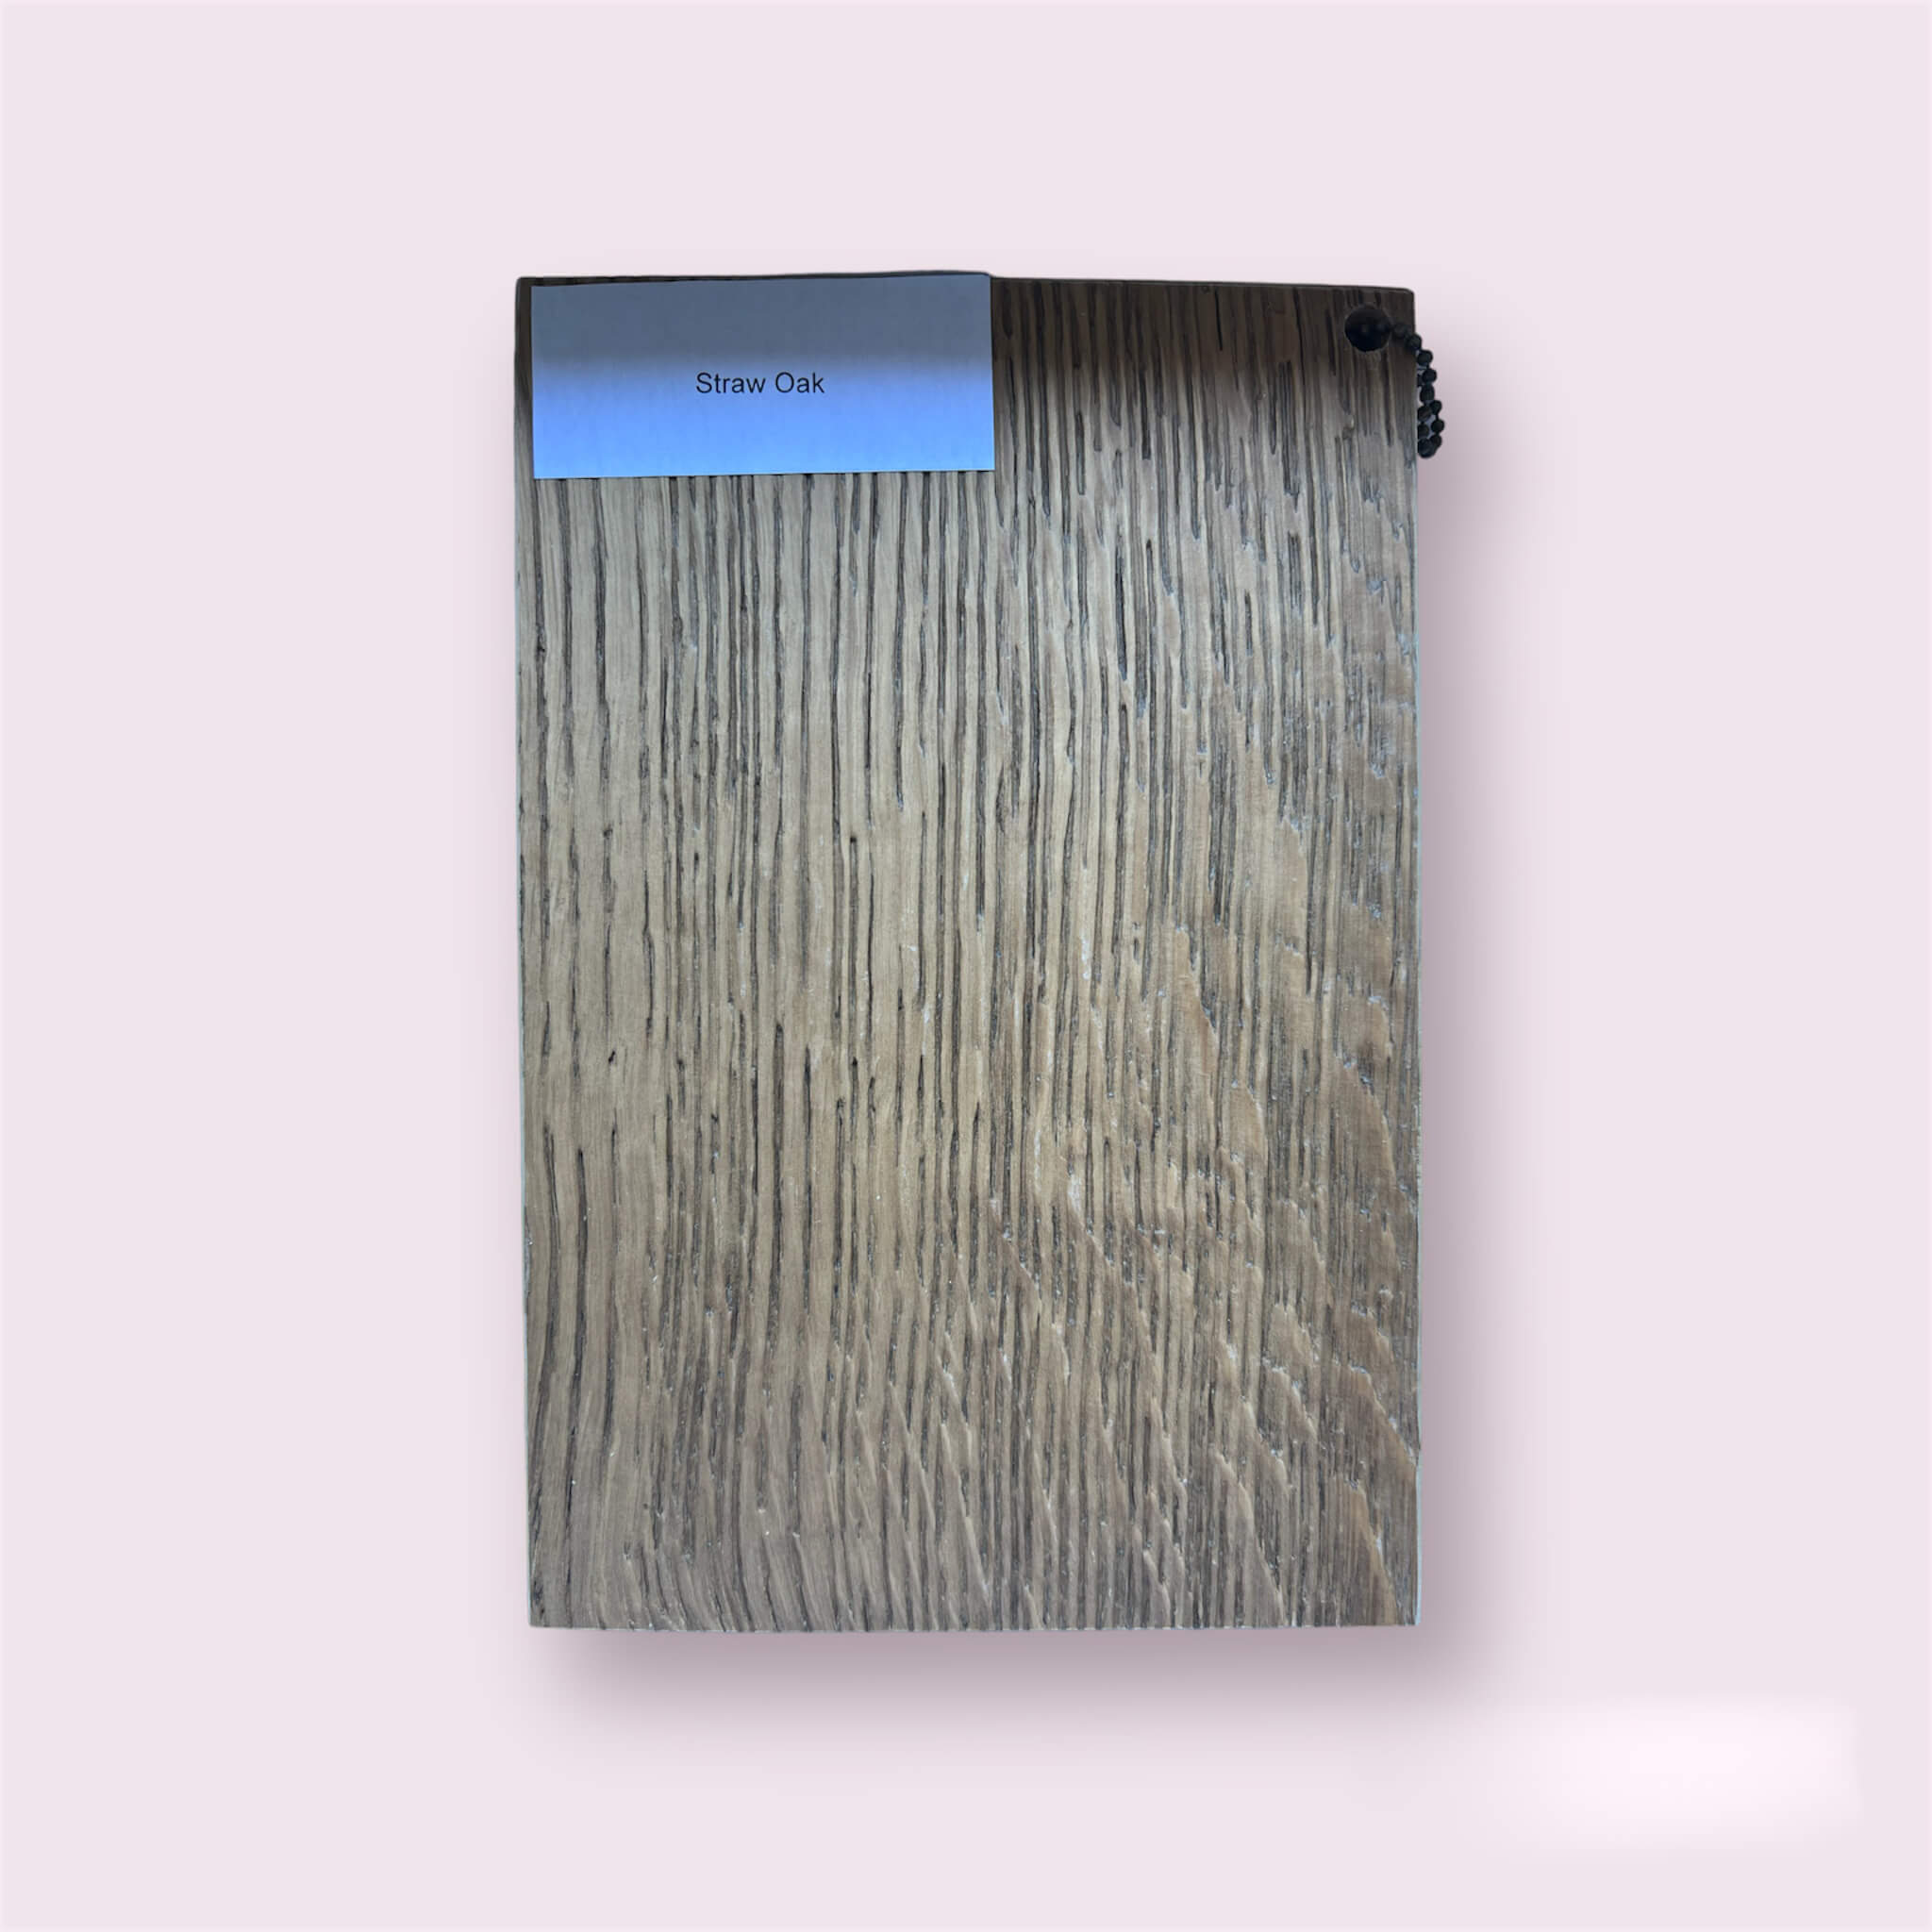 Zdjęcie przedstawia fornir Straw Oak - cienką warstwę drewna o naturalnym wyglądzie w kolorze Straw Oak